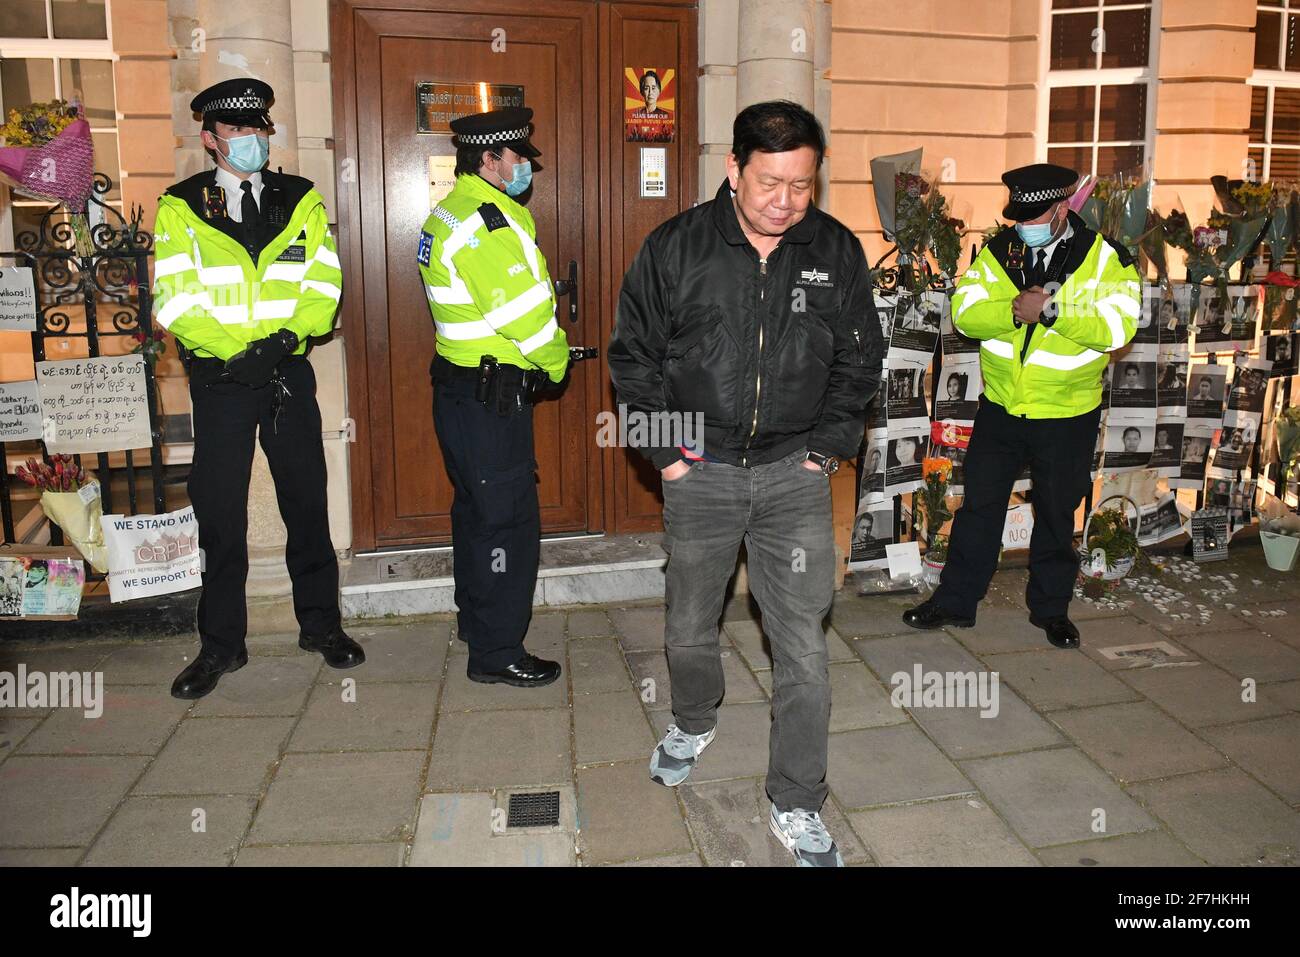 L'ambasciatore del Myanmar nel Regno Unito Kyaw Zwar Minn si allontana dopo aver tentato senza successo di entrare nell'ambasciata del Myanmar a Mayfair, Londra. Data immagine: Mercoledì 7 aprile 2021. Foto Stock